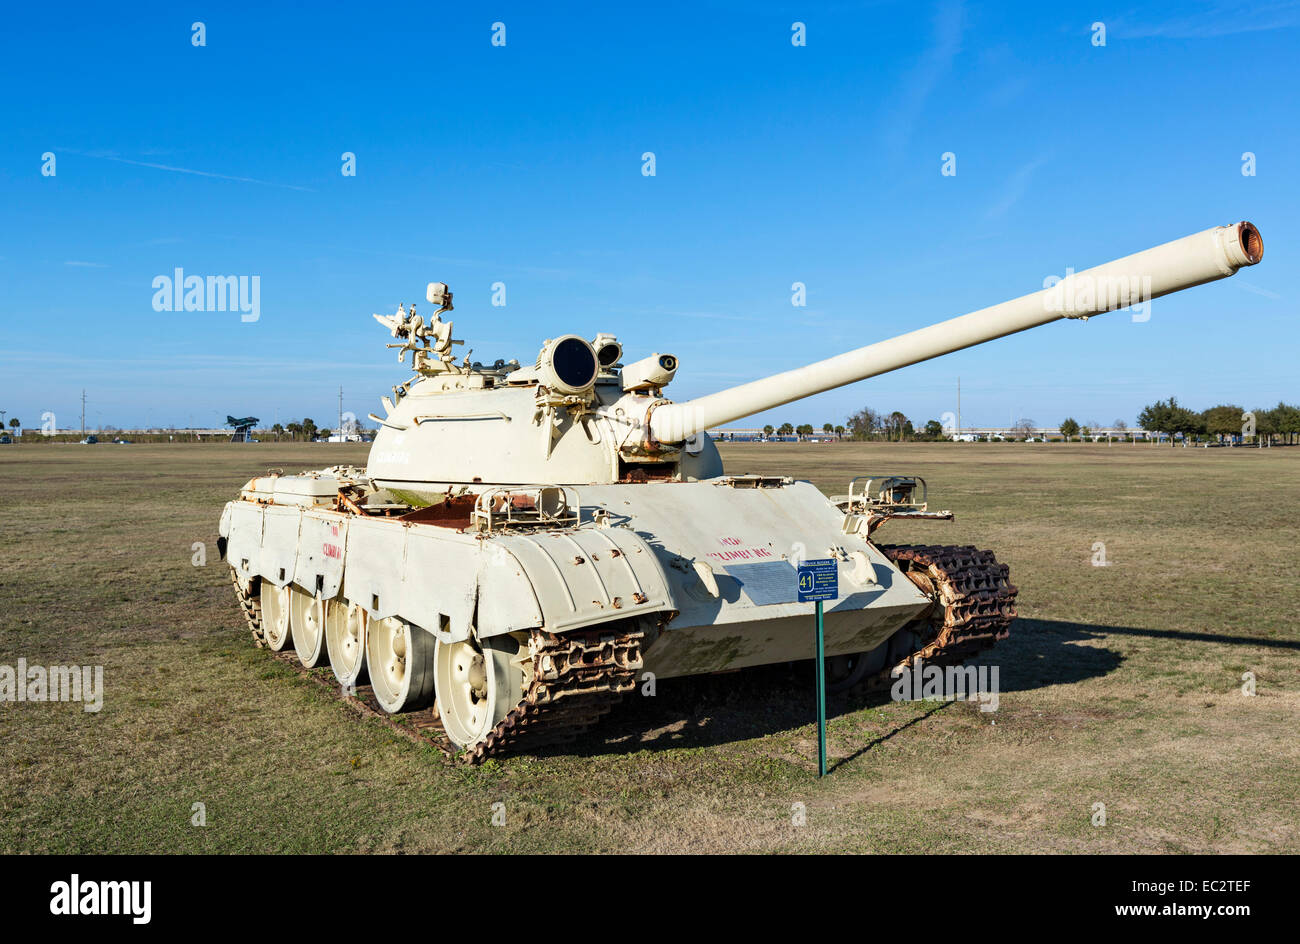 An Iraqui T-55 tank, USS Alabama Battleship Memorial Park, Mobile, Alabama, USA Stock Photo